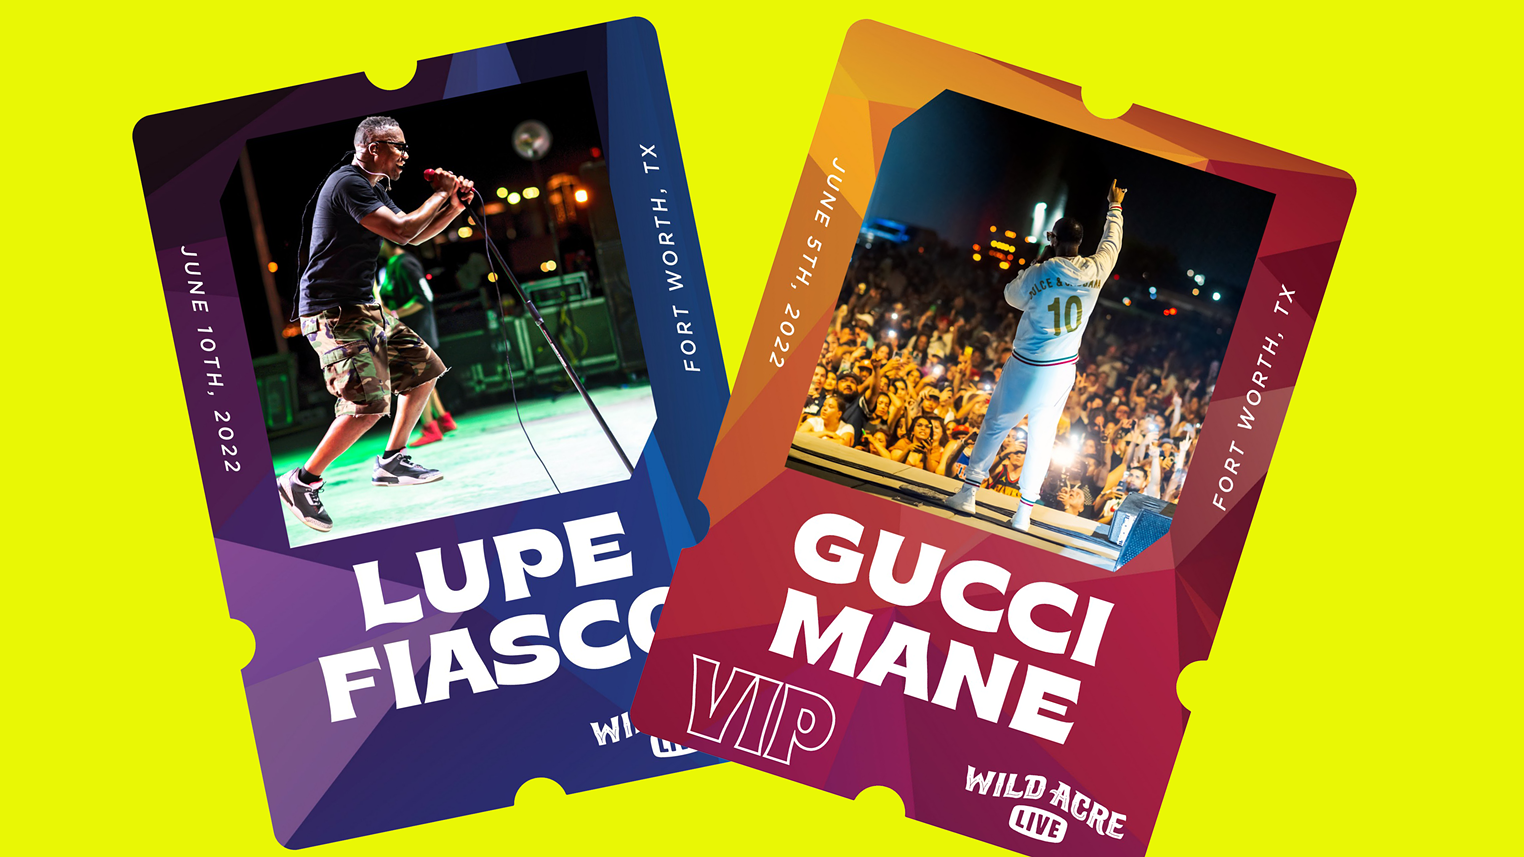 Gucci Mane  Wild Acre Live